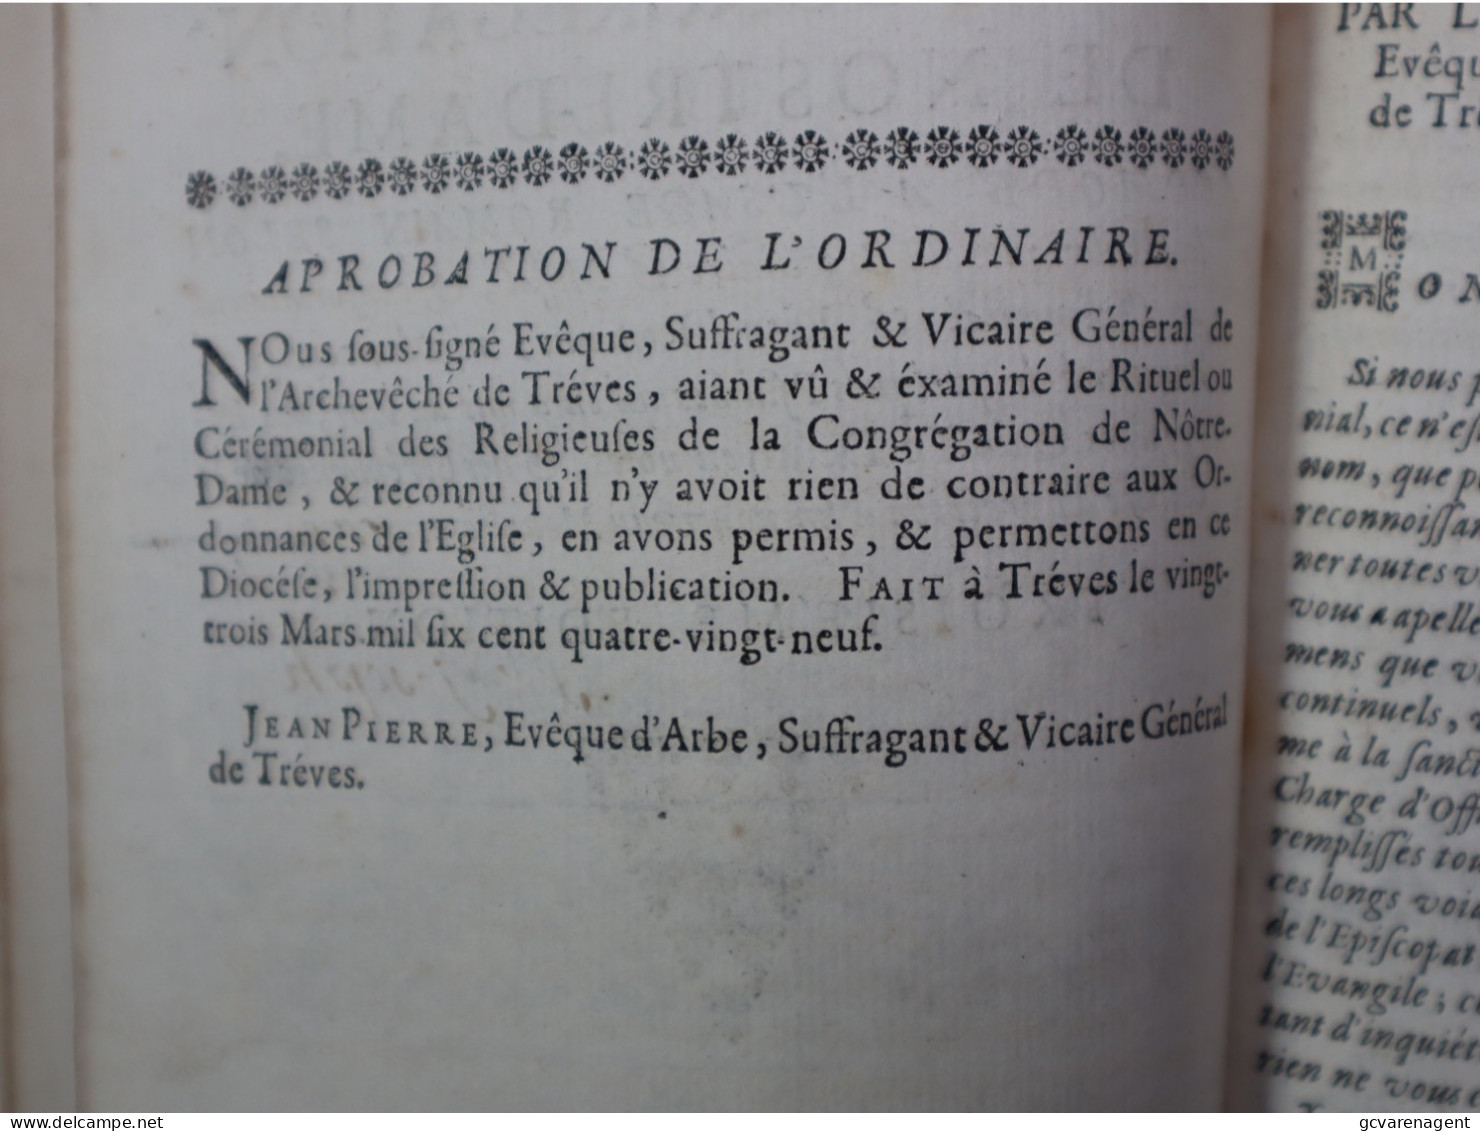 1690  CEREMONIAL DES RELIGIEUSES DE LA CONGREGATION DE NOSTRE DAME = VOIR DESCRIPTION ET IMAGES - Jusque 1700